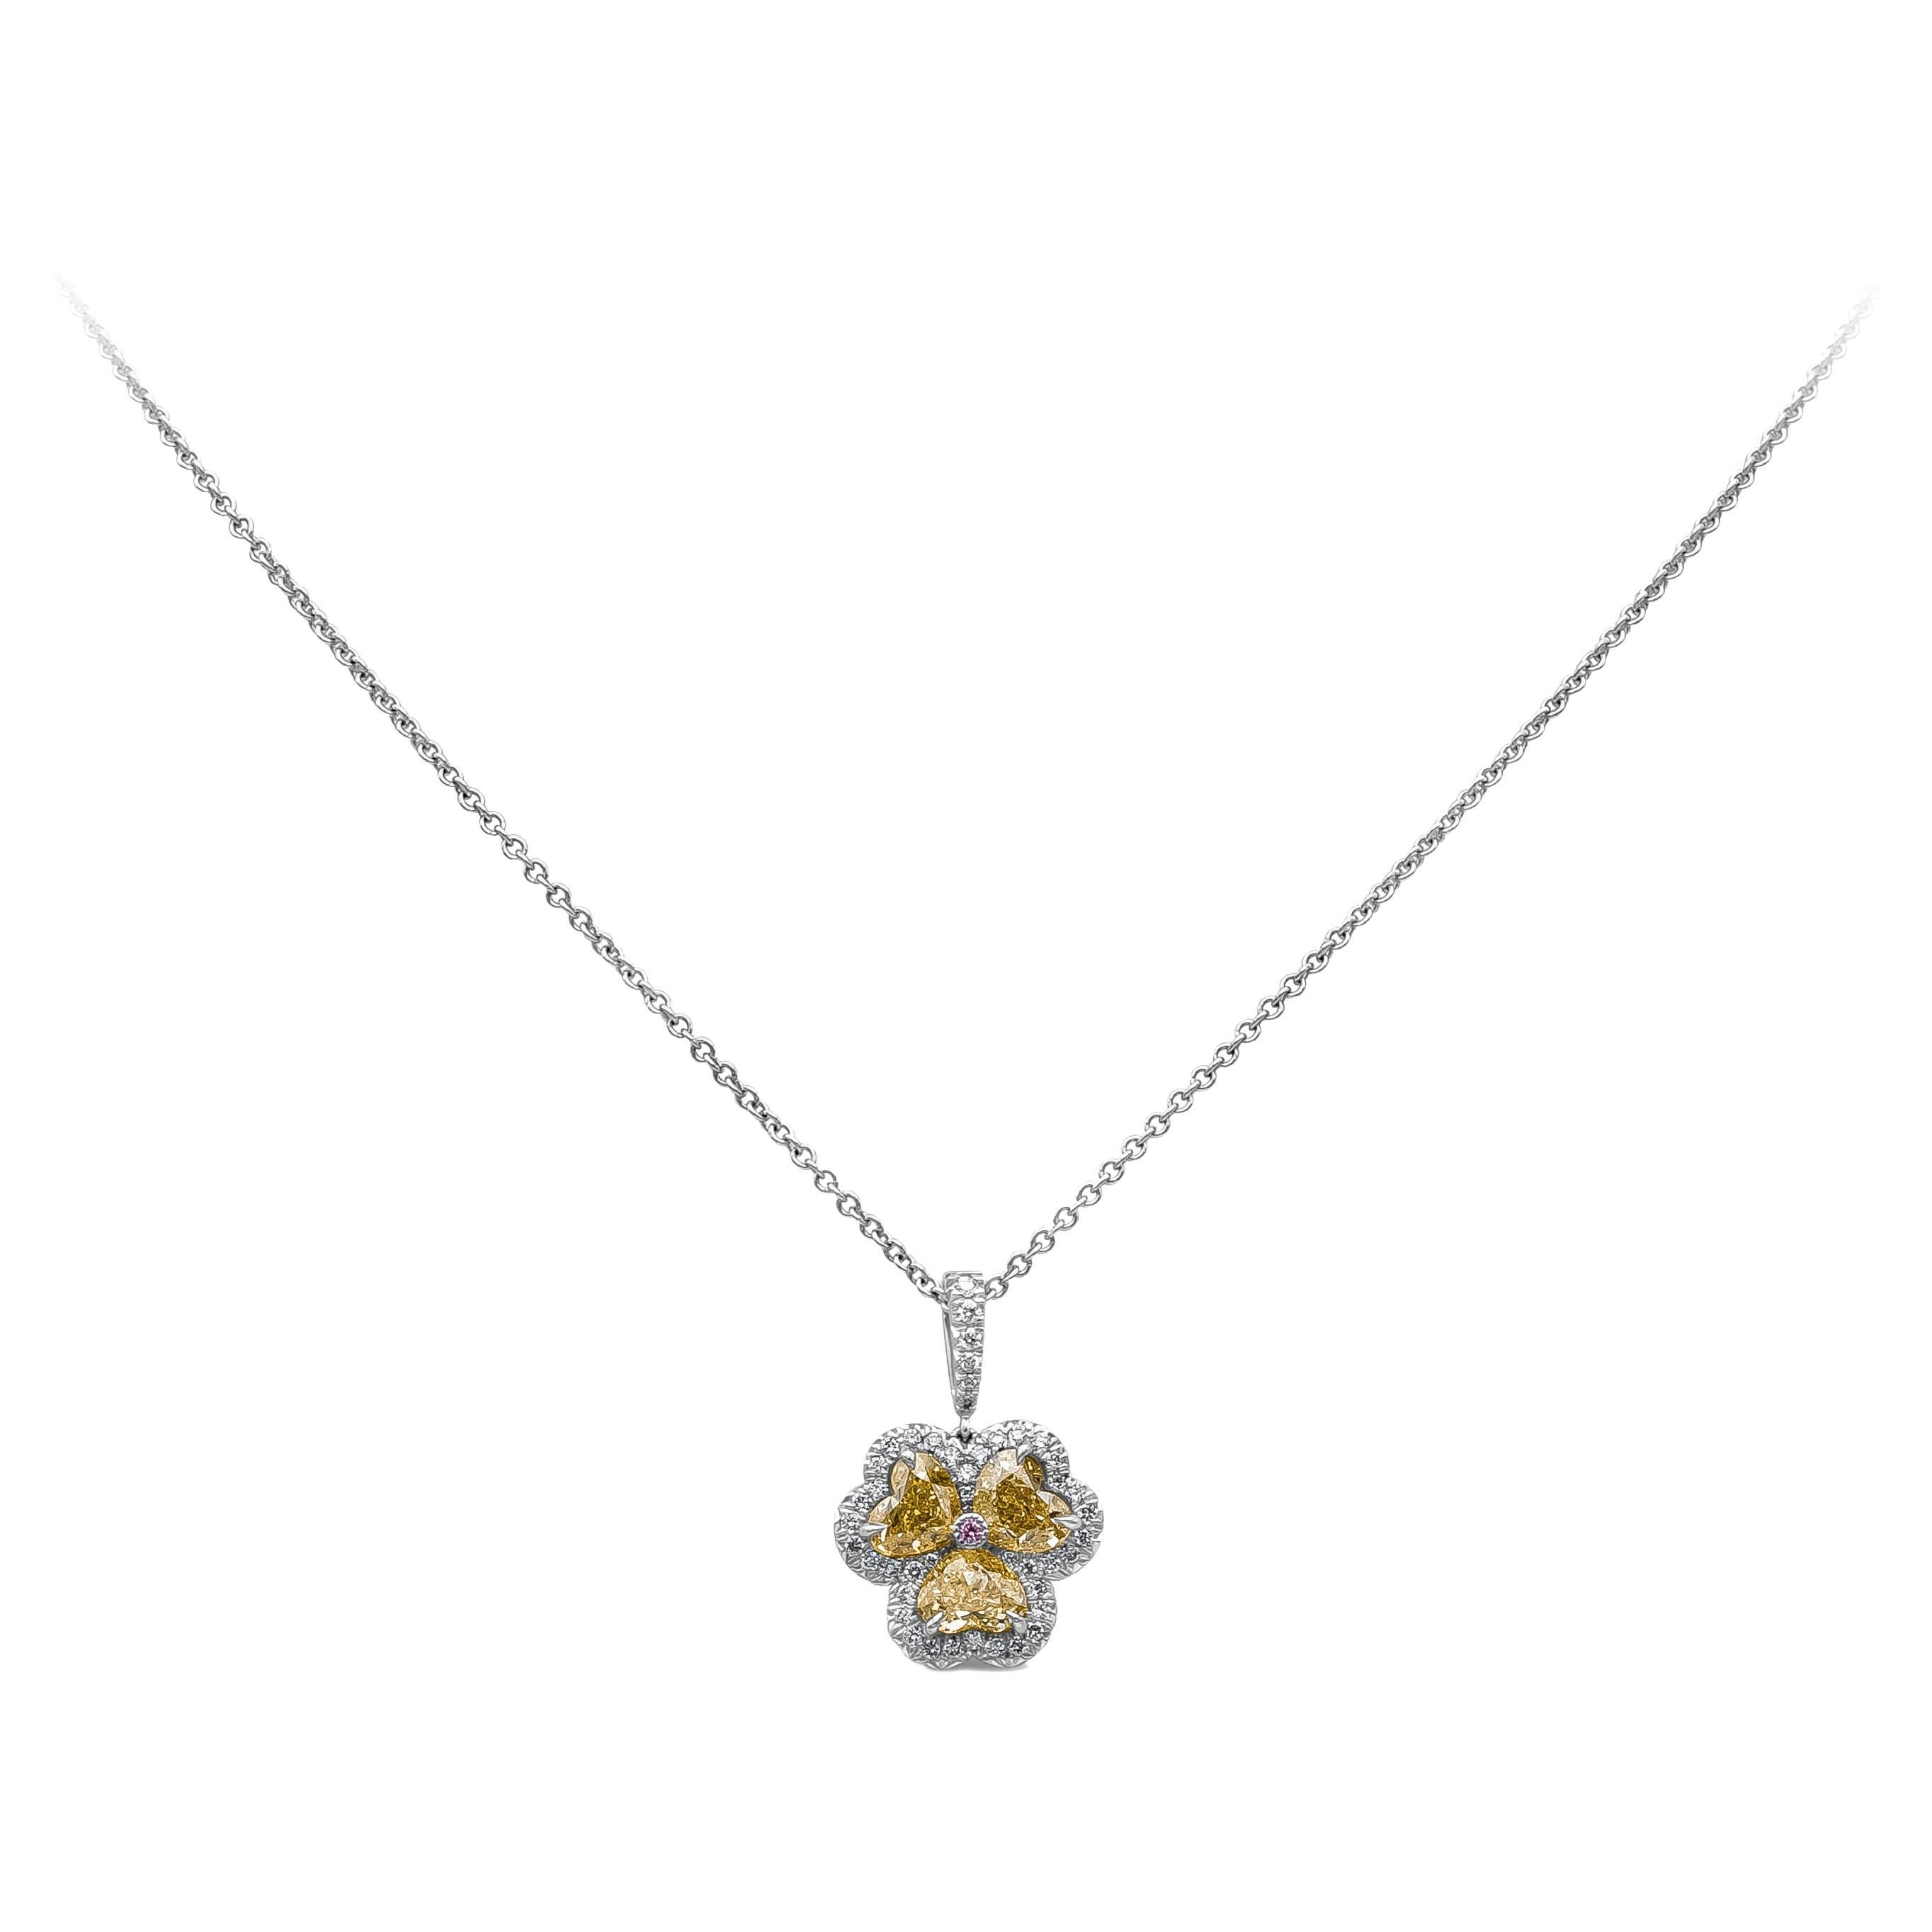 Roman Malakov, collier à pendentif en diamants de couleur jaune fantaisie de 1,66 carat au total